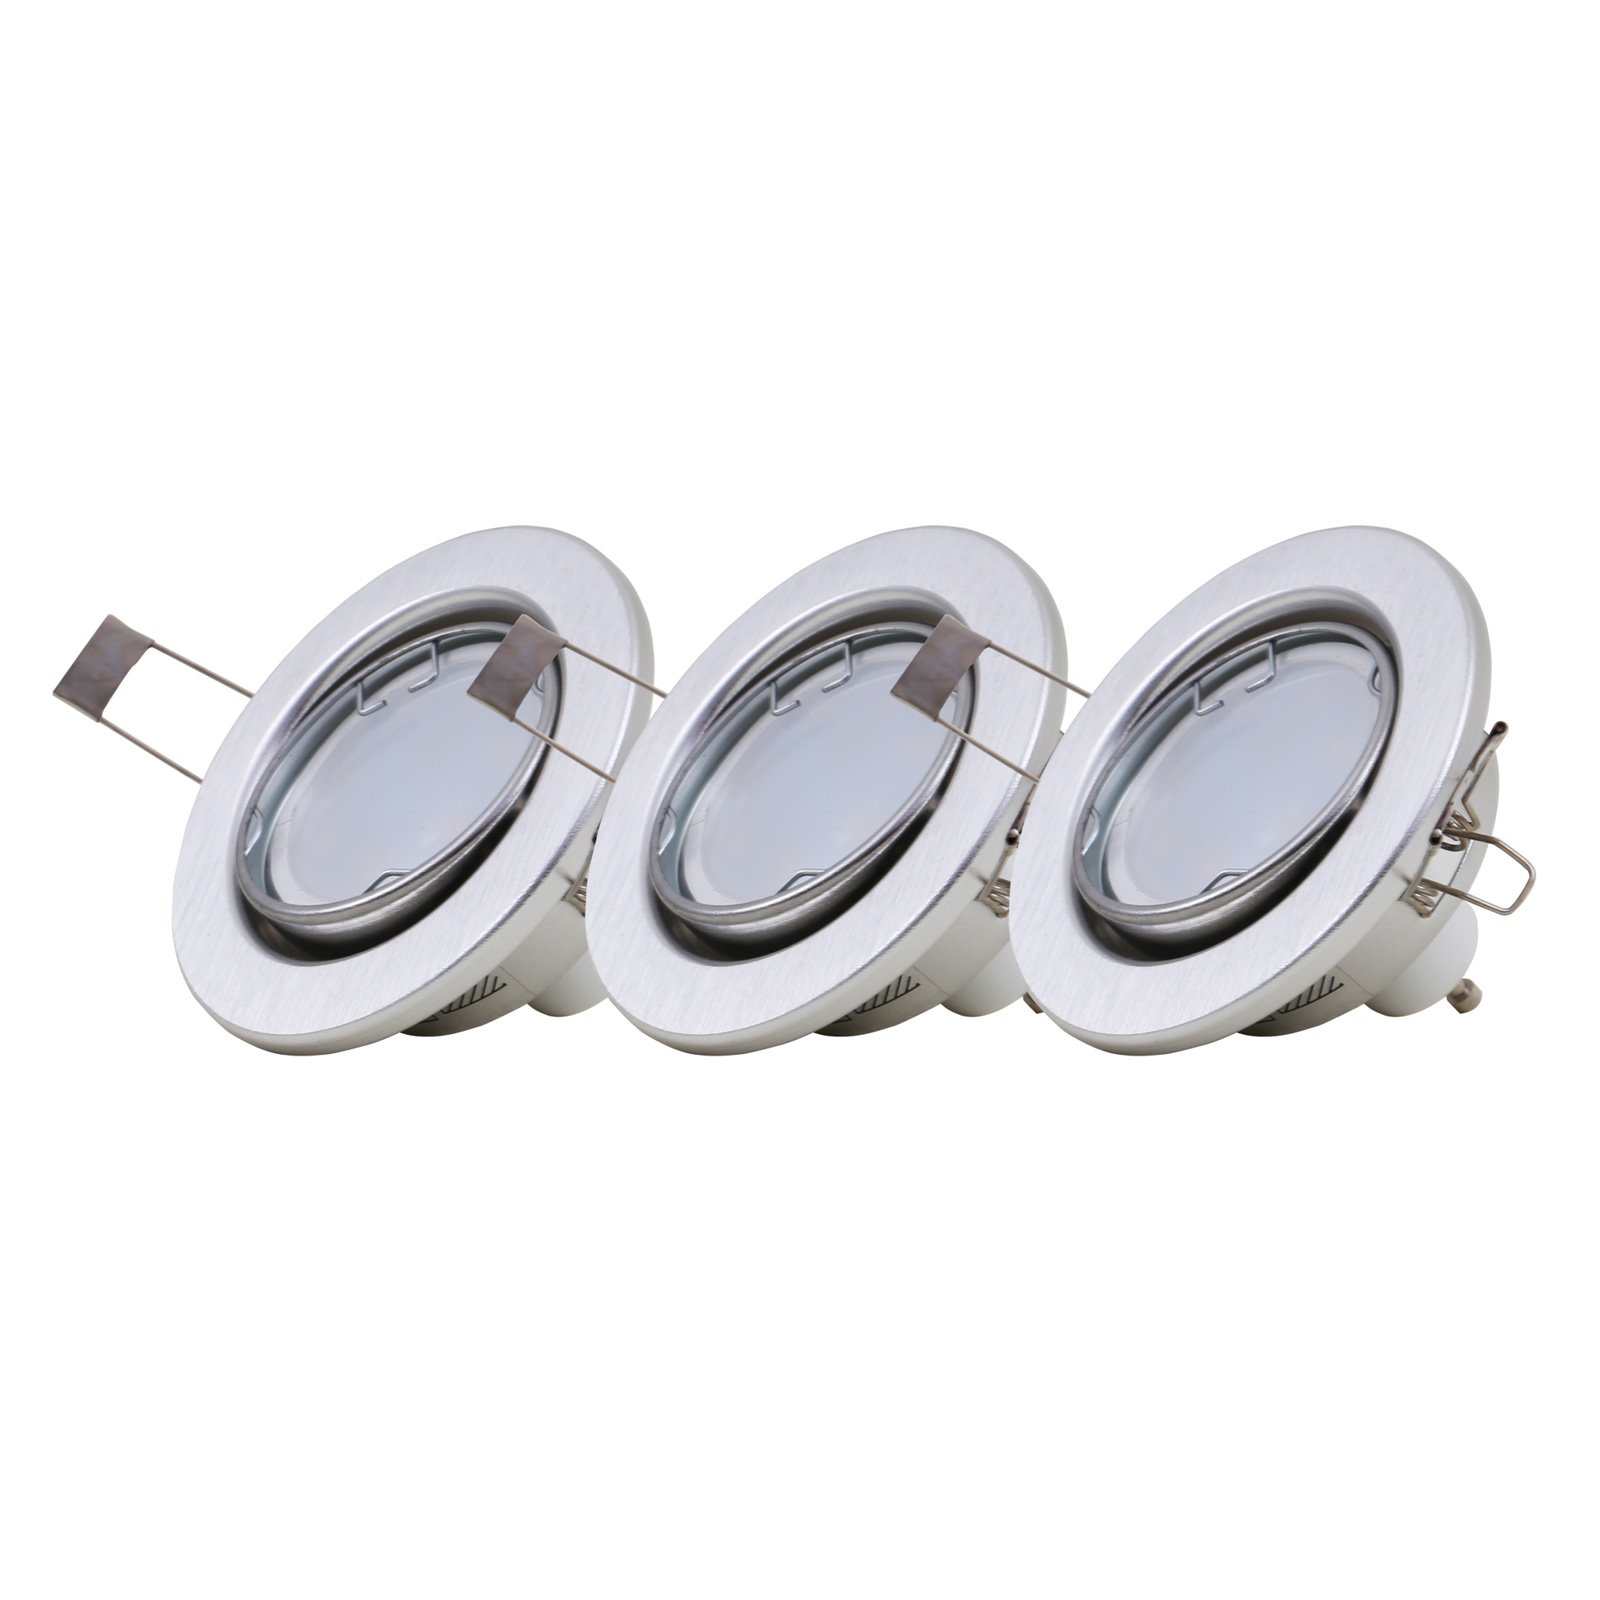 LED inbouwlampen 7221-039 Fit 3 per set in alu